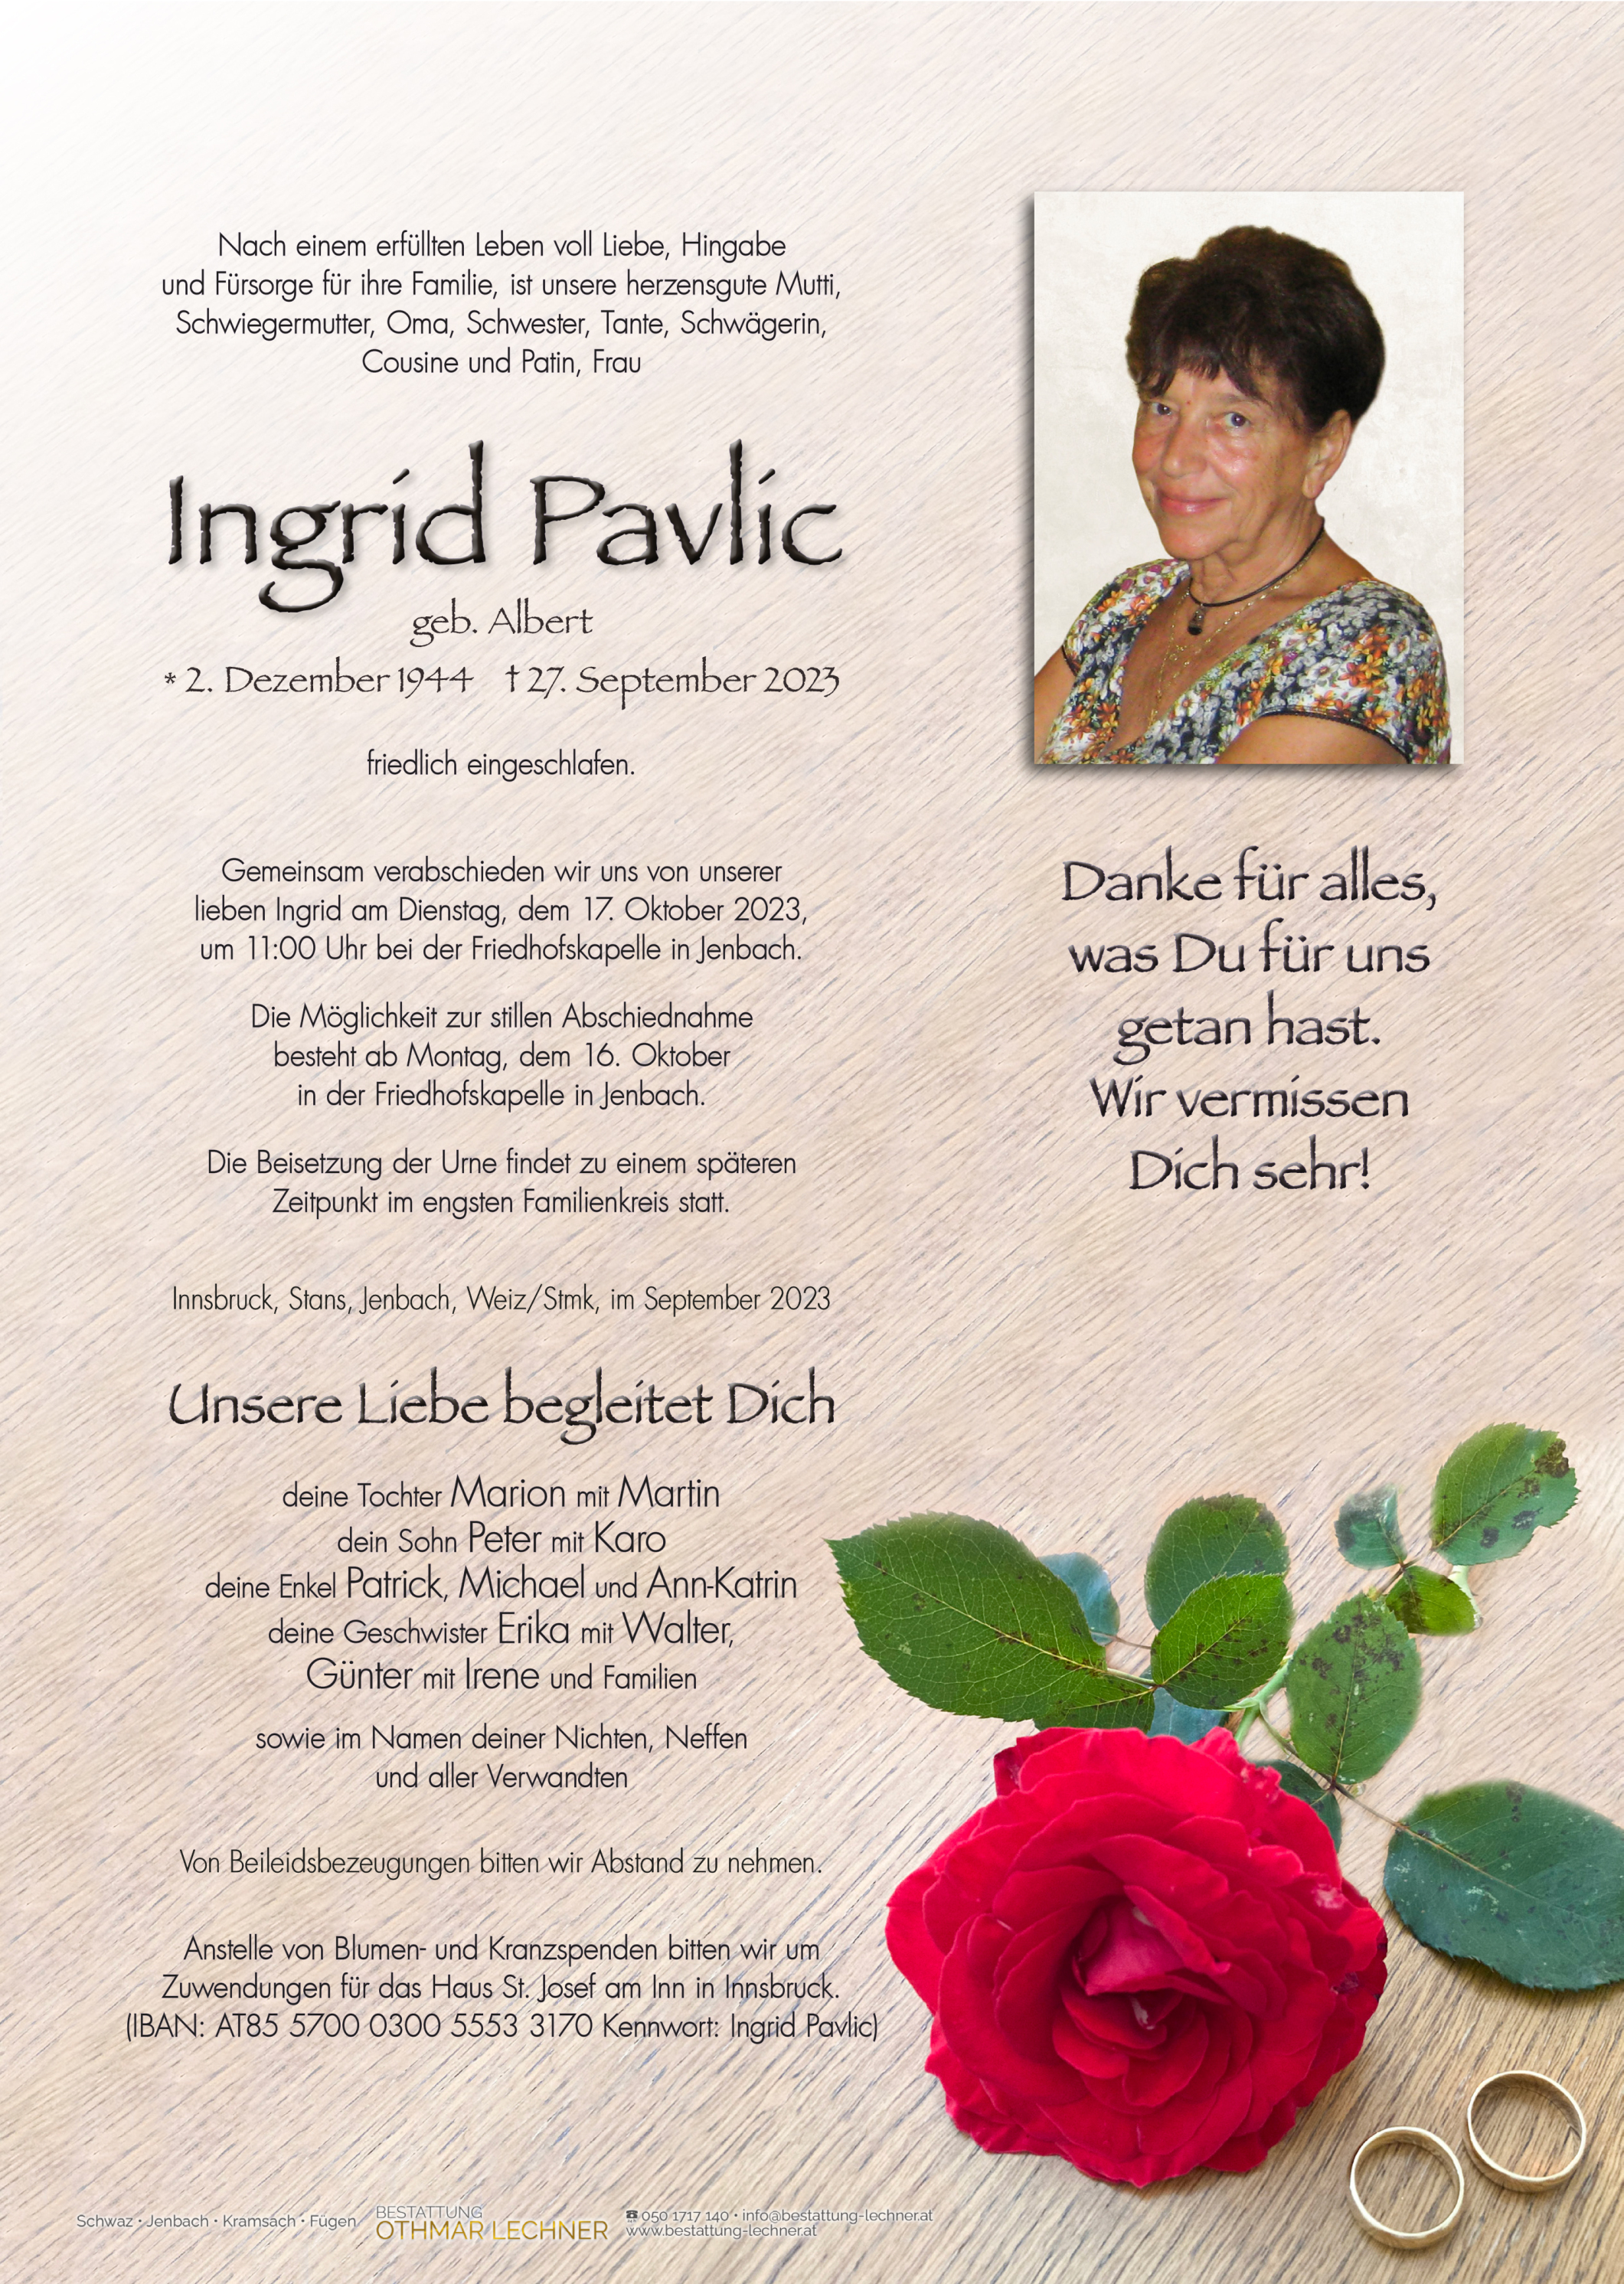 Ingrid  Pavlic